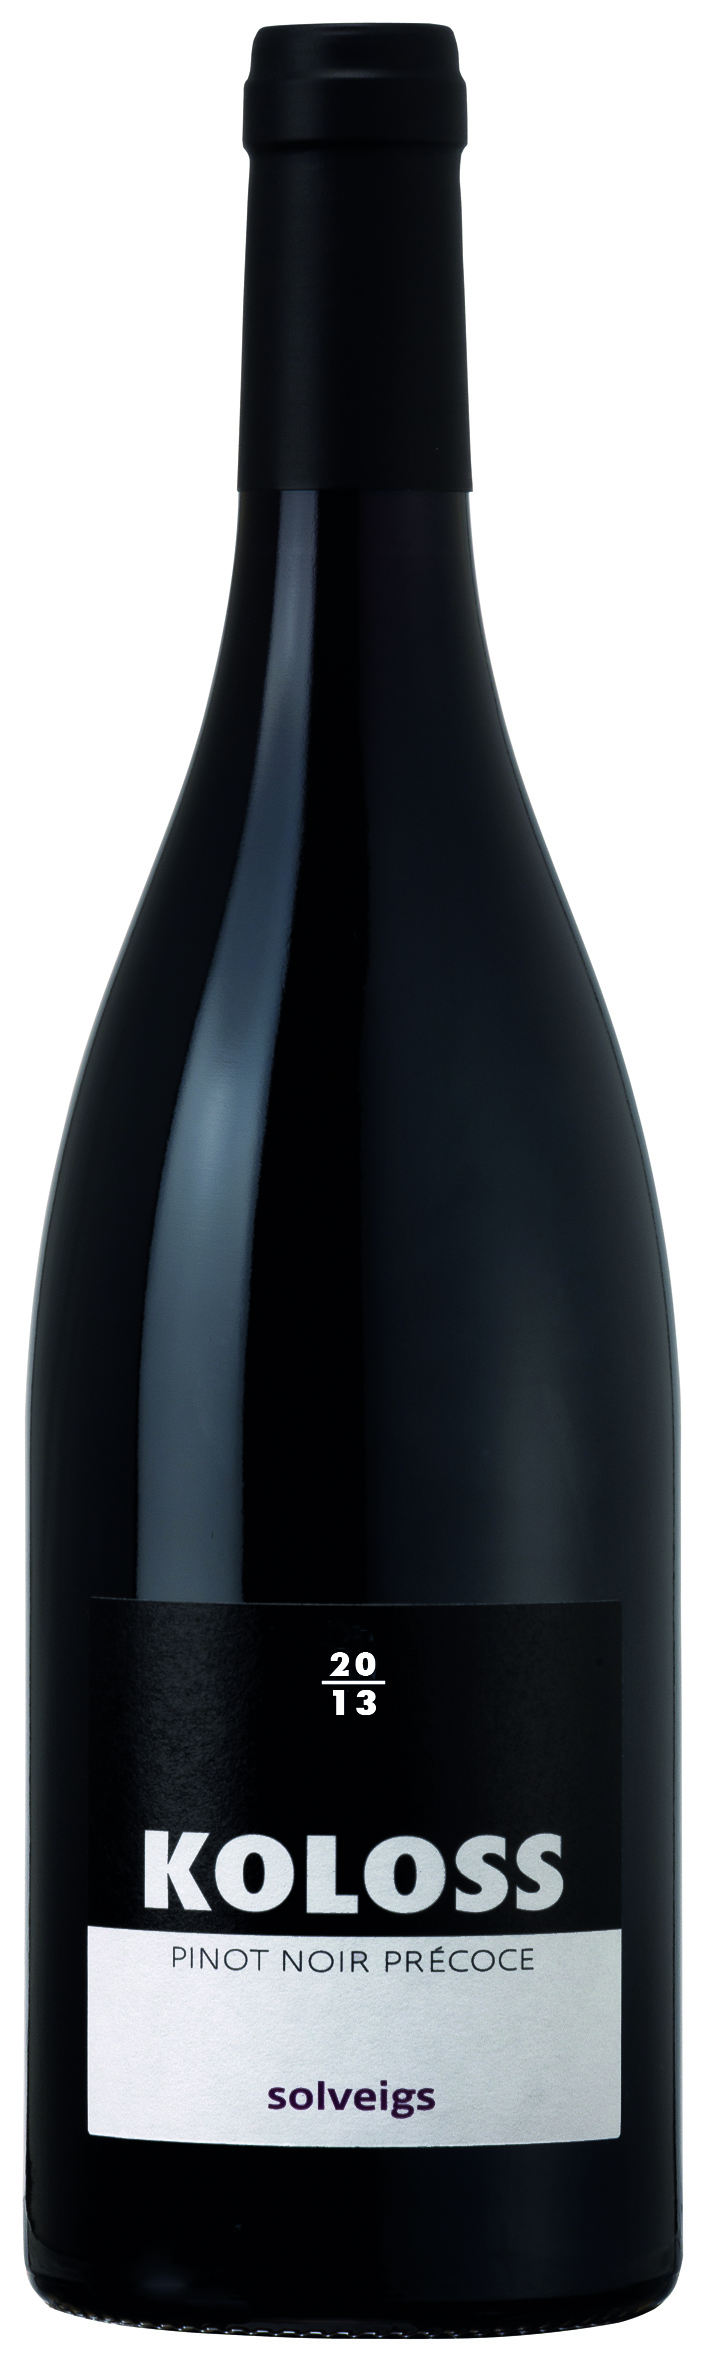 2012 Koloss Pinot Noir Précoce Qualitätswein 0.75l